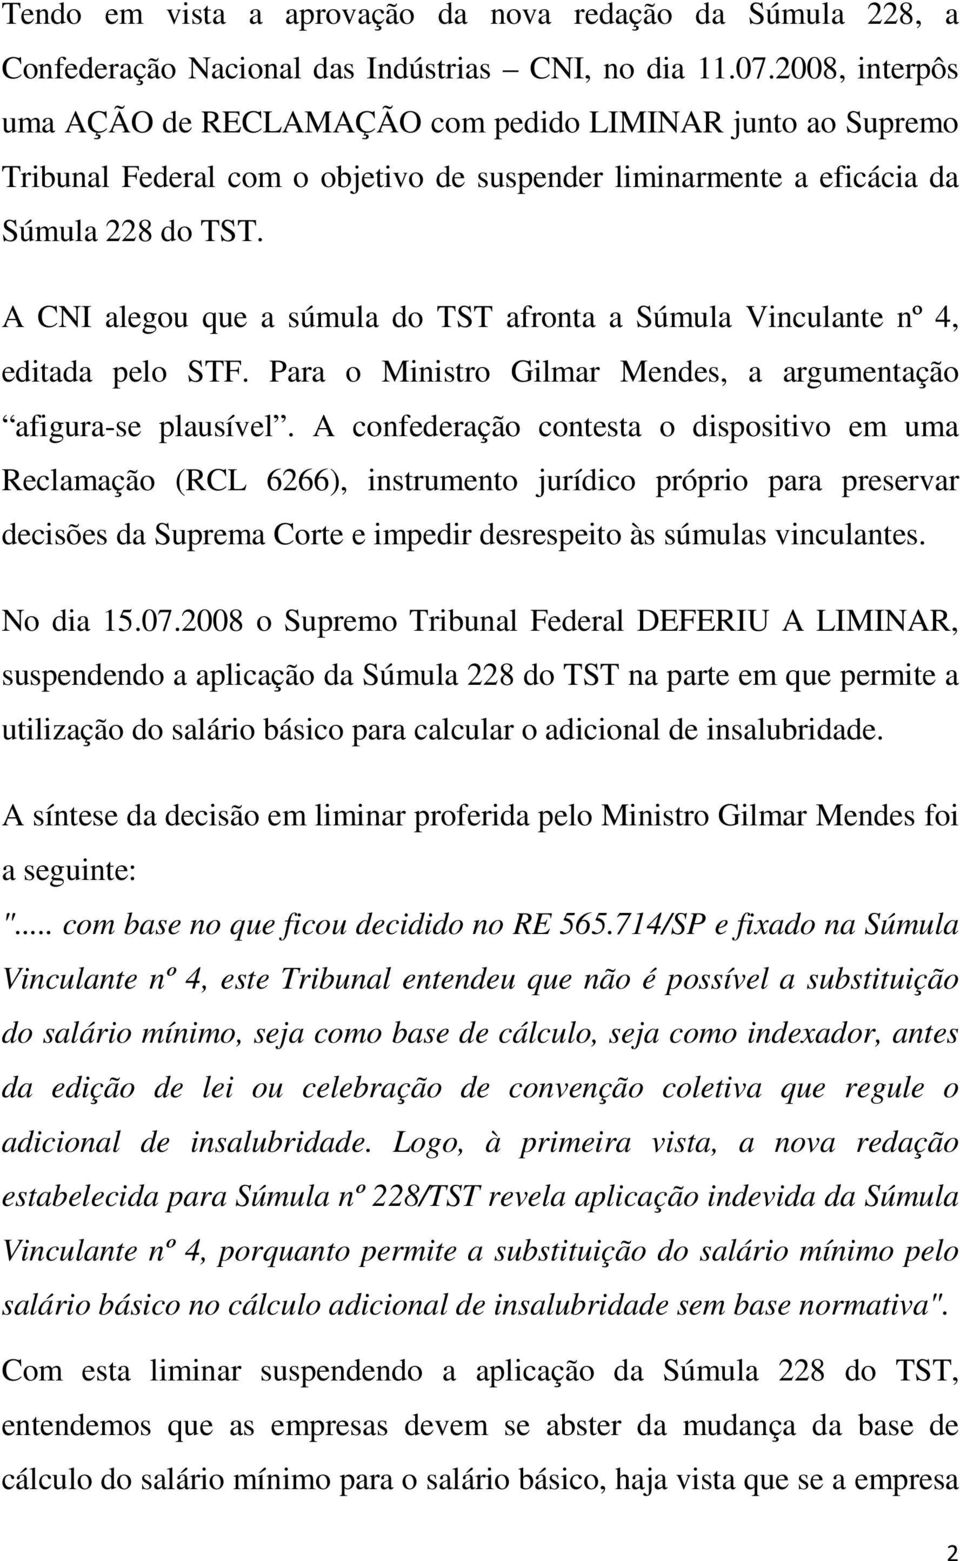 A CNI alegou que a súmula do TST afronta a Súmula Vinculante nº 4, editada pelo STF. Para o Ministro Gilmar Mendes, a argumentação afigura-se plausível.